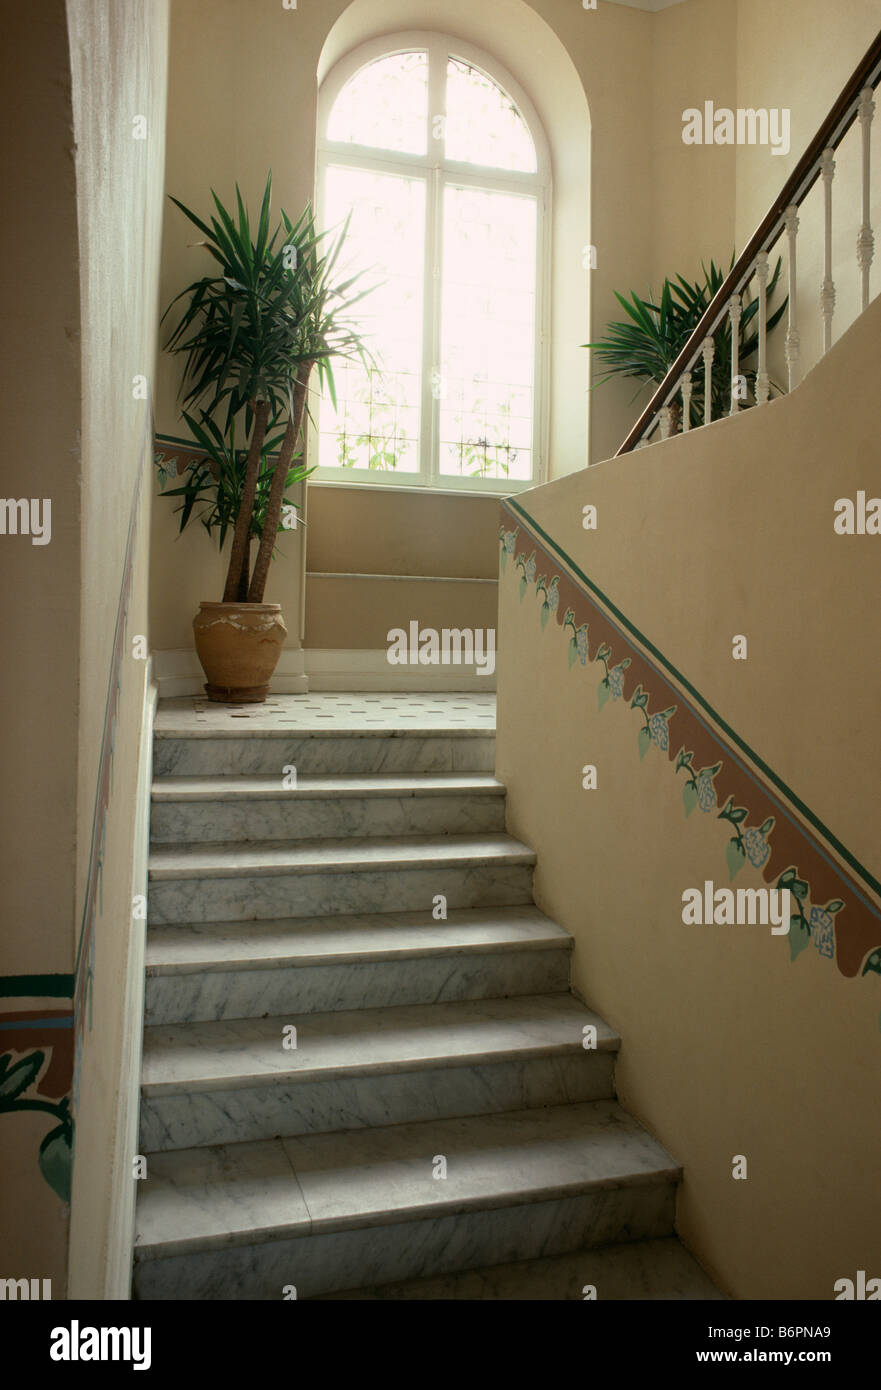 Confine dipinta sulla parete sopra le scale di pietra che conduce al piccolo approdo con finestra ad arco e houseplants Foto Stock